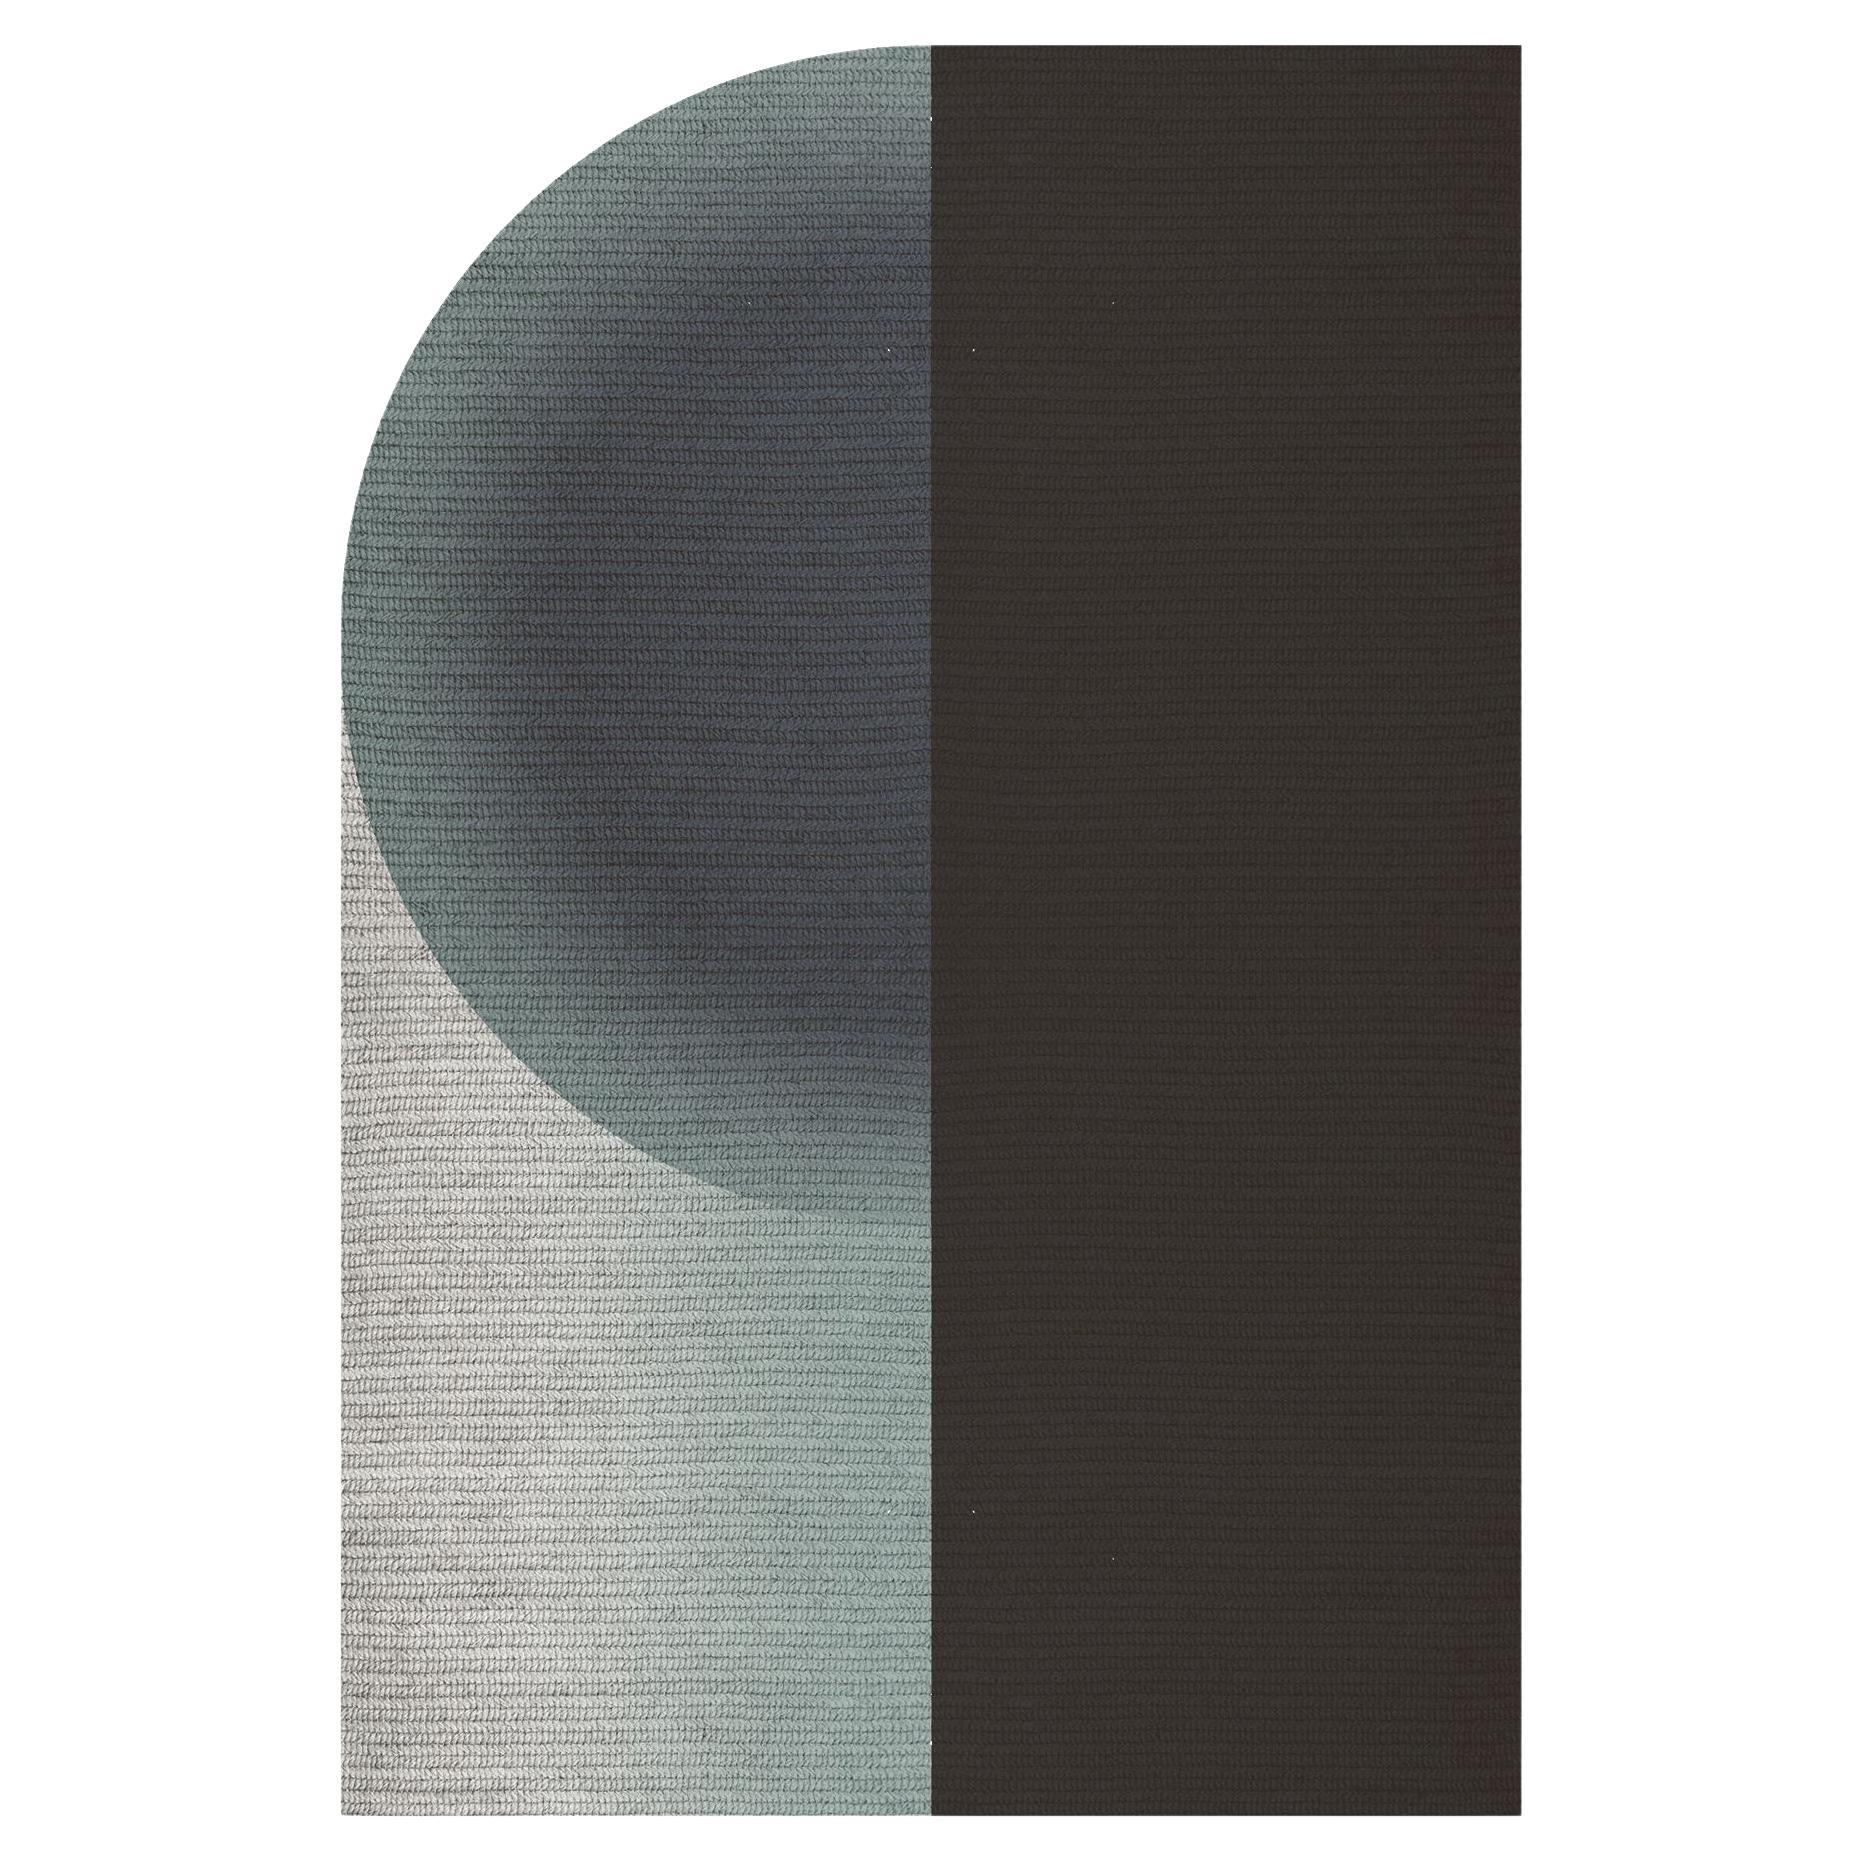 „Glow“ Teppich aus Abaca, Farbe „Sterling“, 160x240cm, von Claire Vos für Musett Design